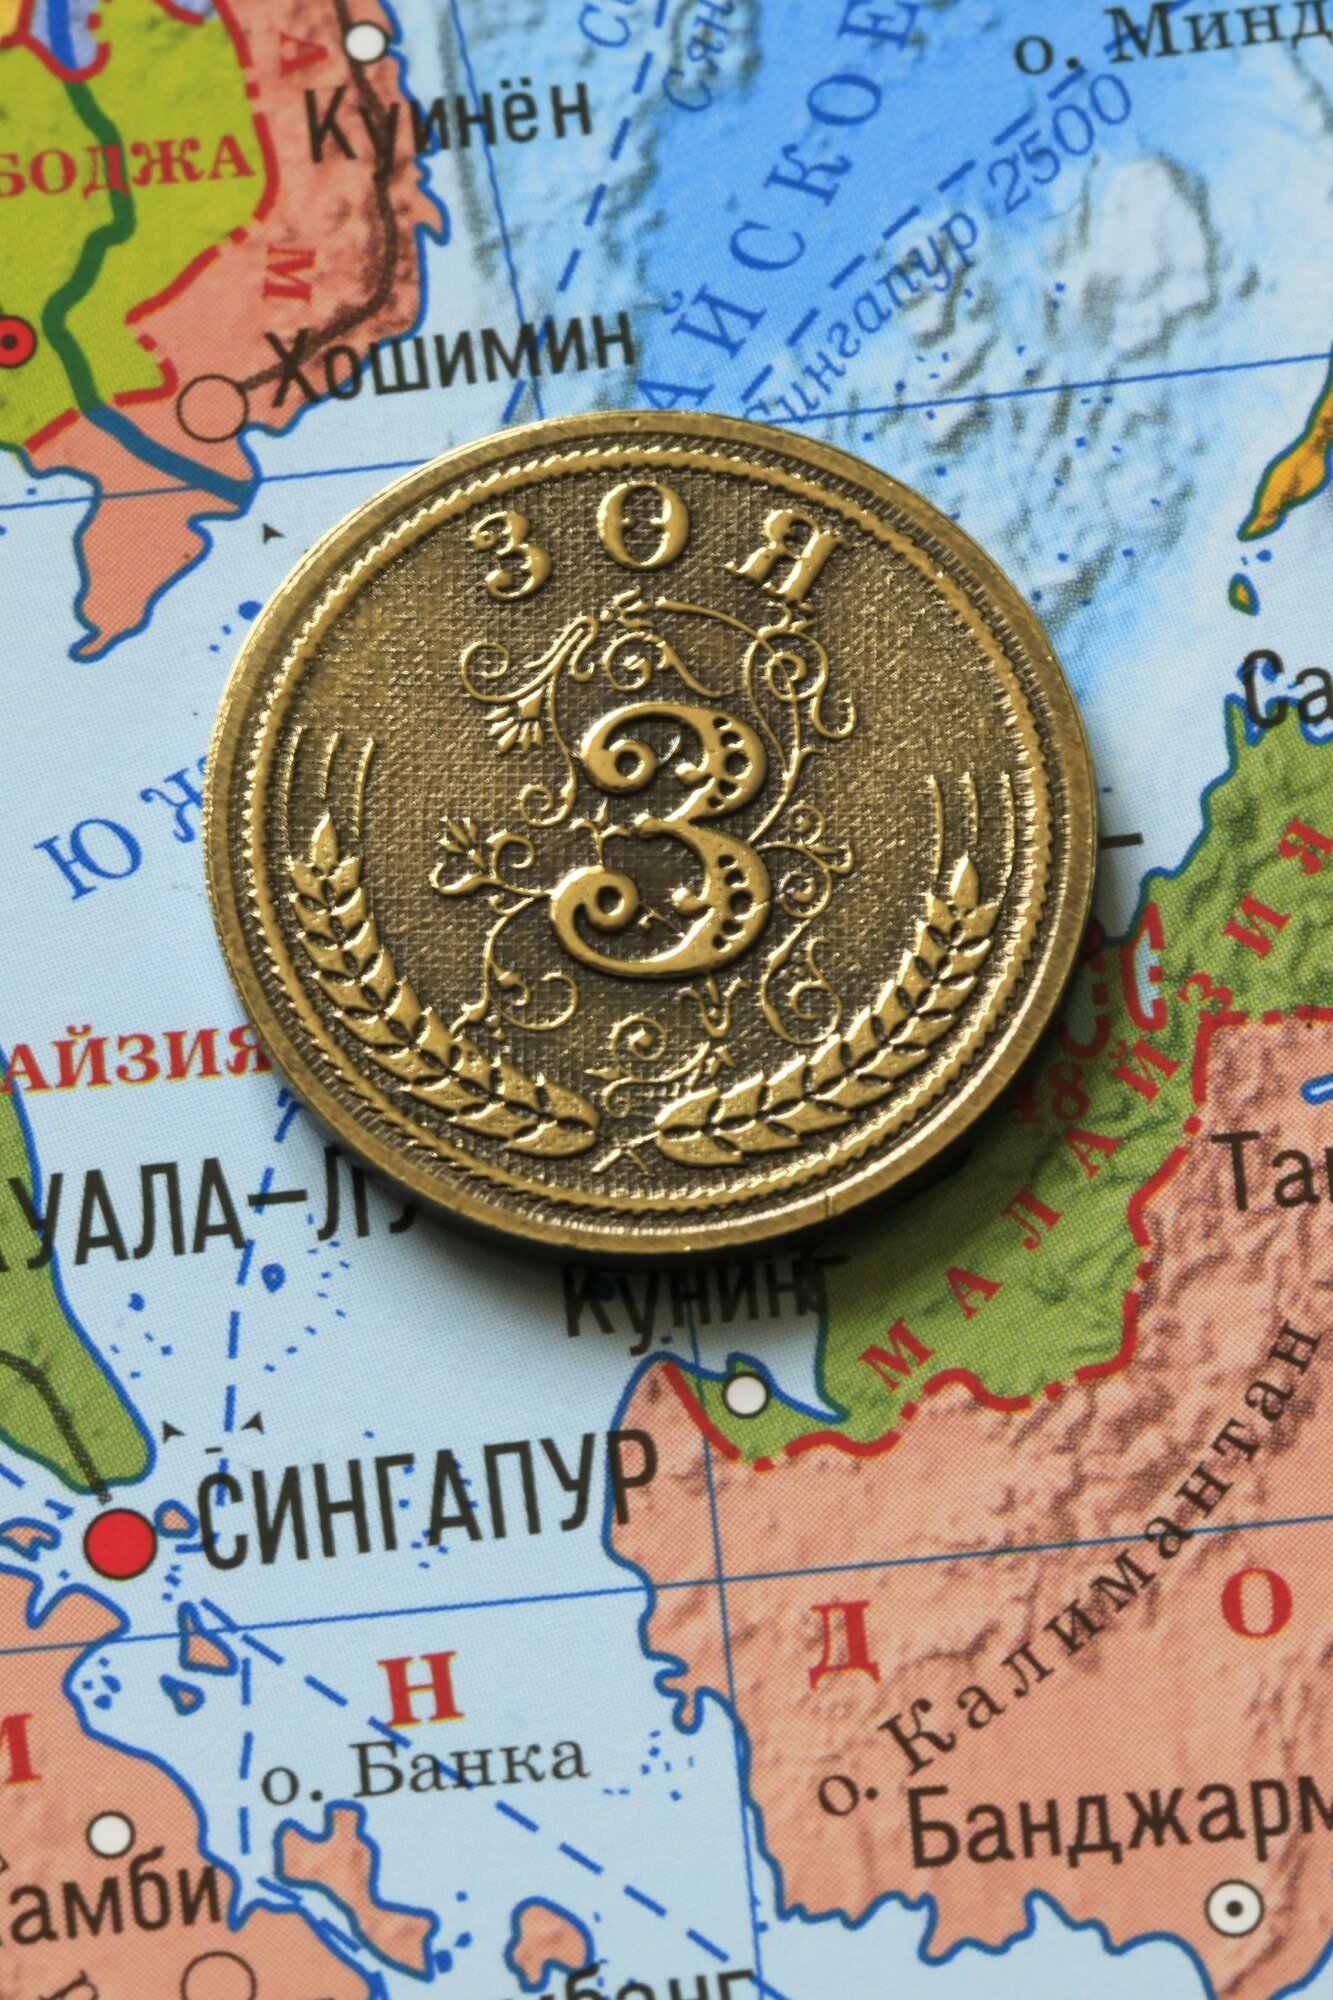 Именная оригинальна сувенирная монетка в подарок на богатство и удачу для женщины, девушки и девочки - Зоя